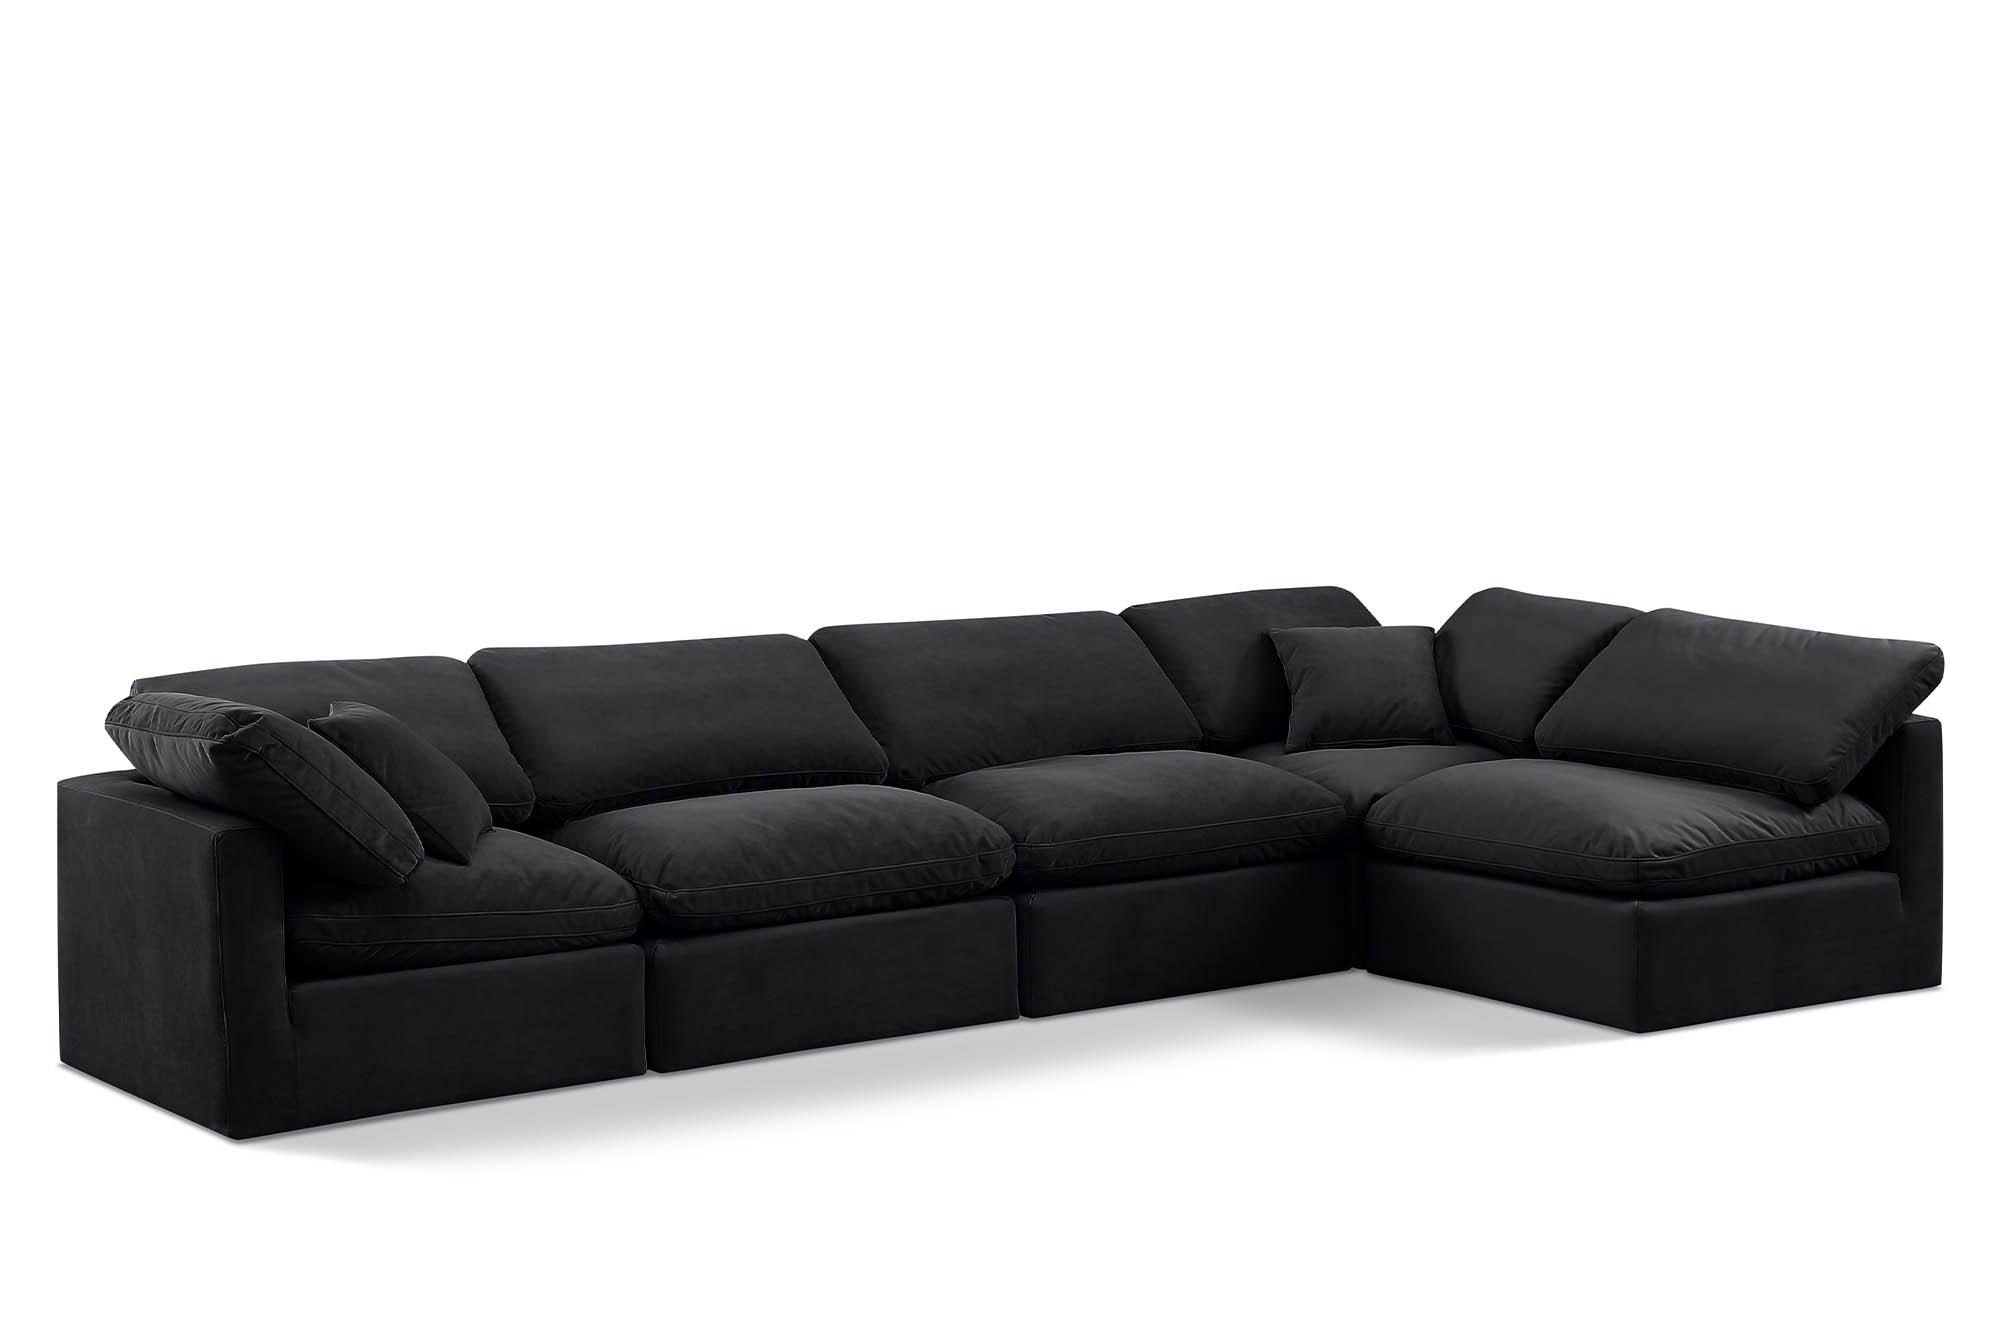 Contemporary, Modern Modular Sectional Sofa INDULGE 147Black-Sec5D 147Black-Sec5D in Black Velvet